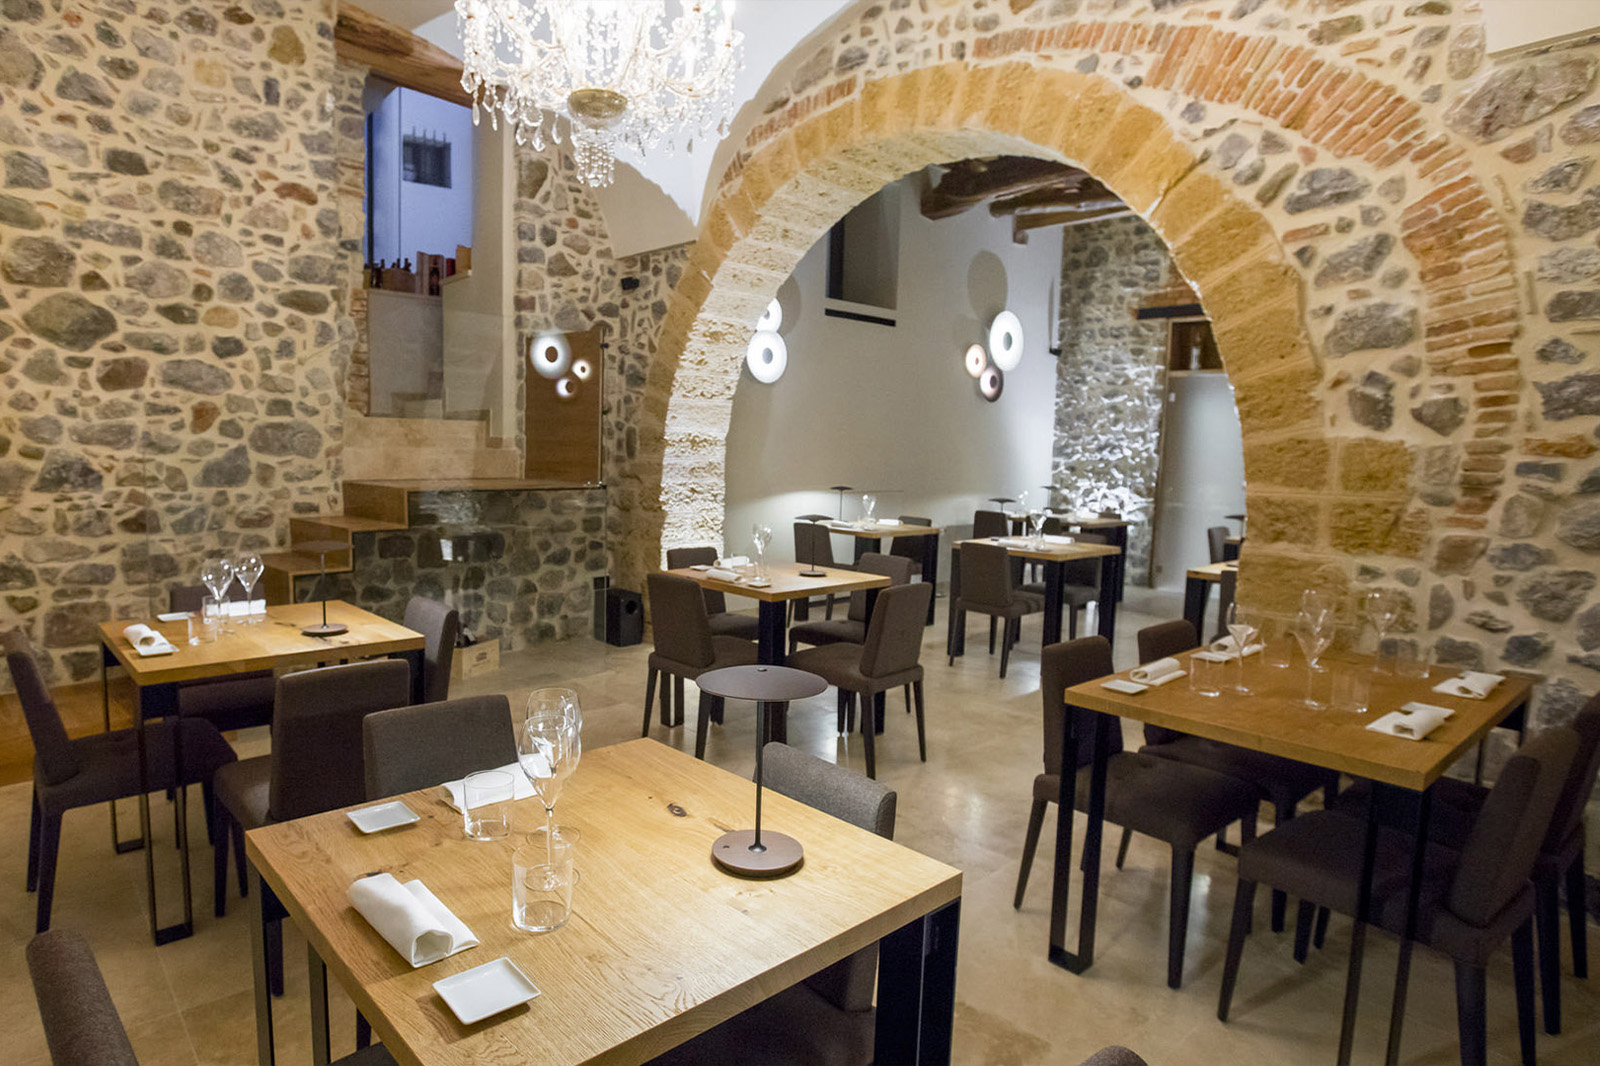 Ristrutturazione ristorante - Cortile Pepe - Palazzo Botta - Restaurant renovation